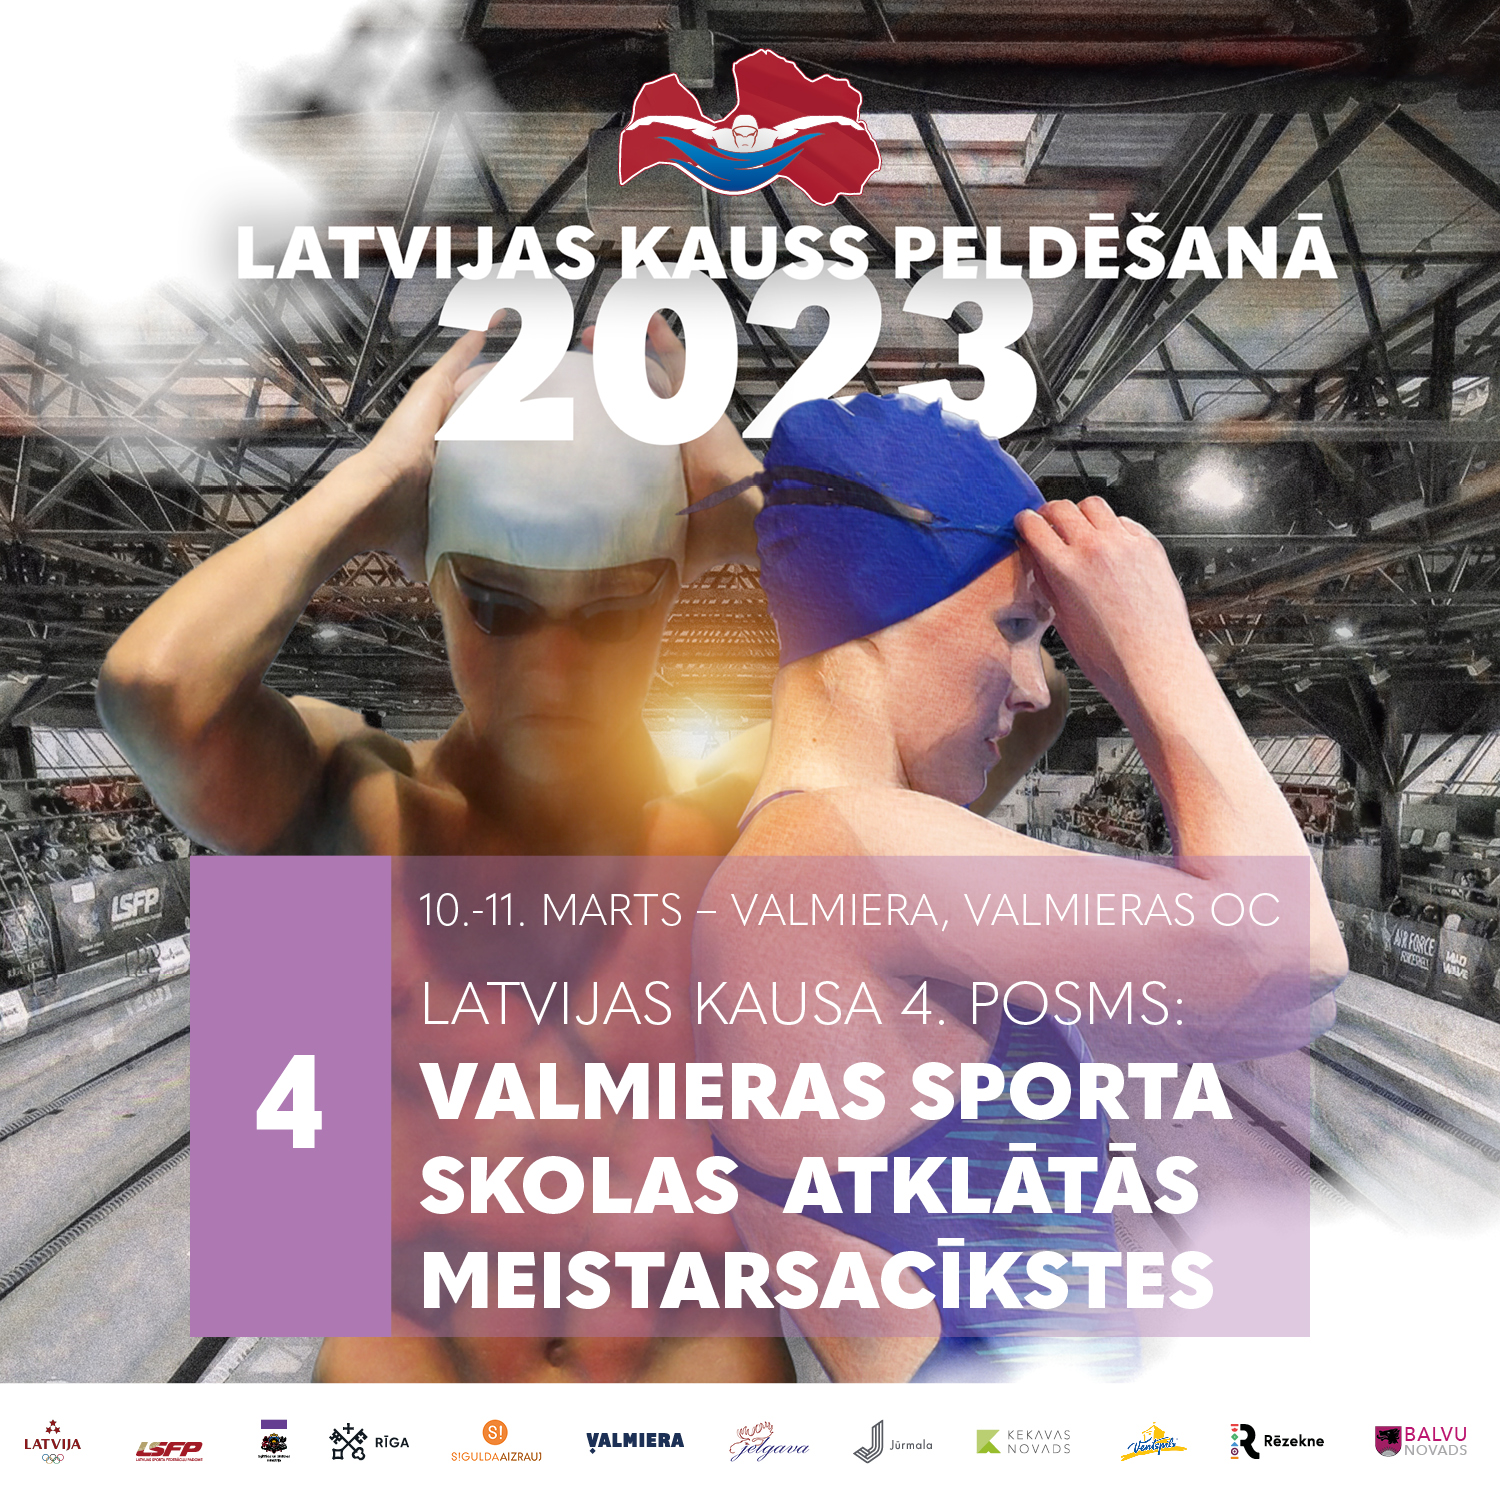 Conquer Prominent Monkey Latvijas kauss - Latvijas Peldēšanas federācija